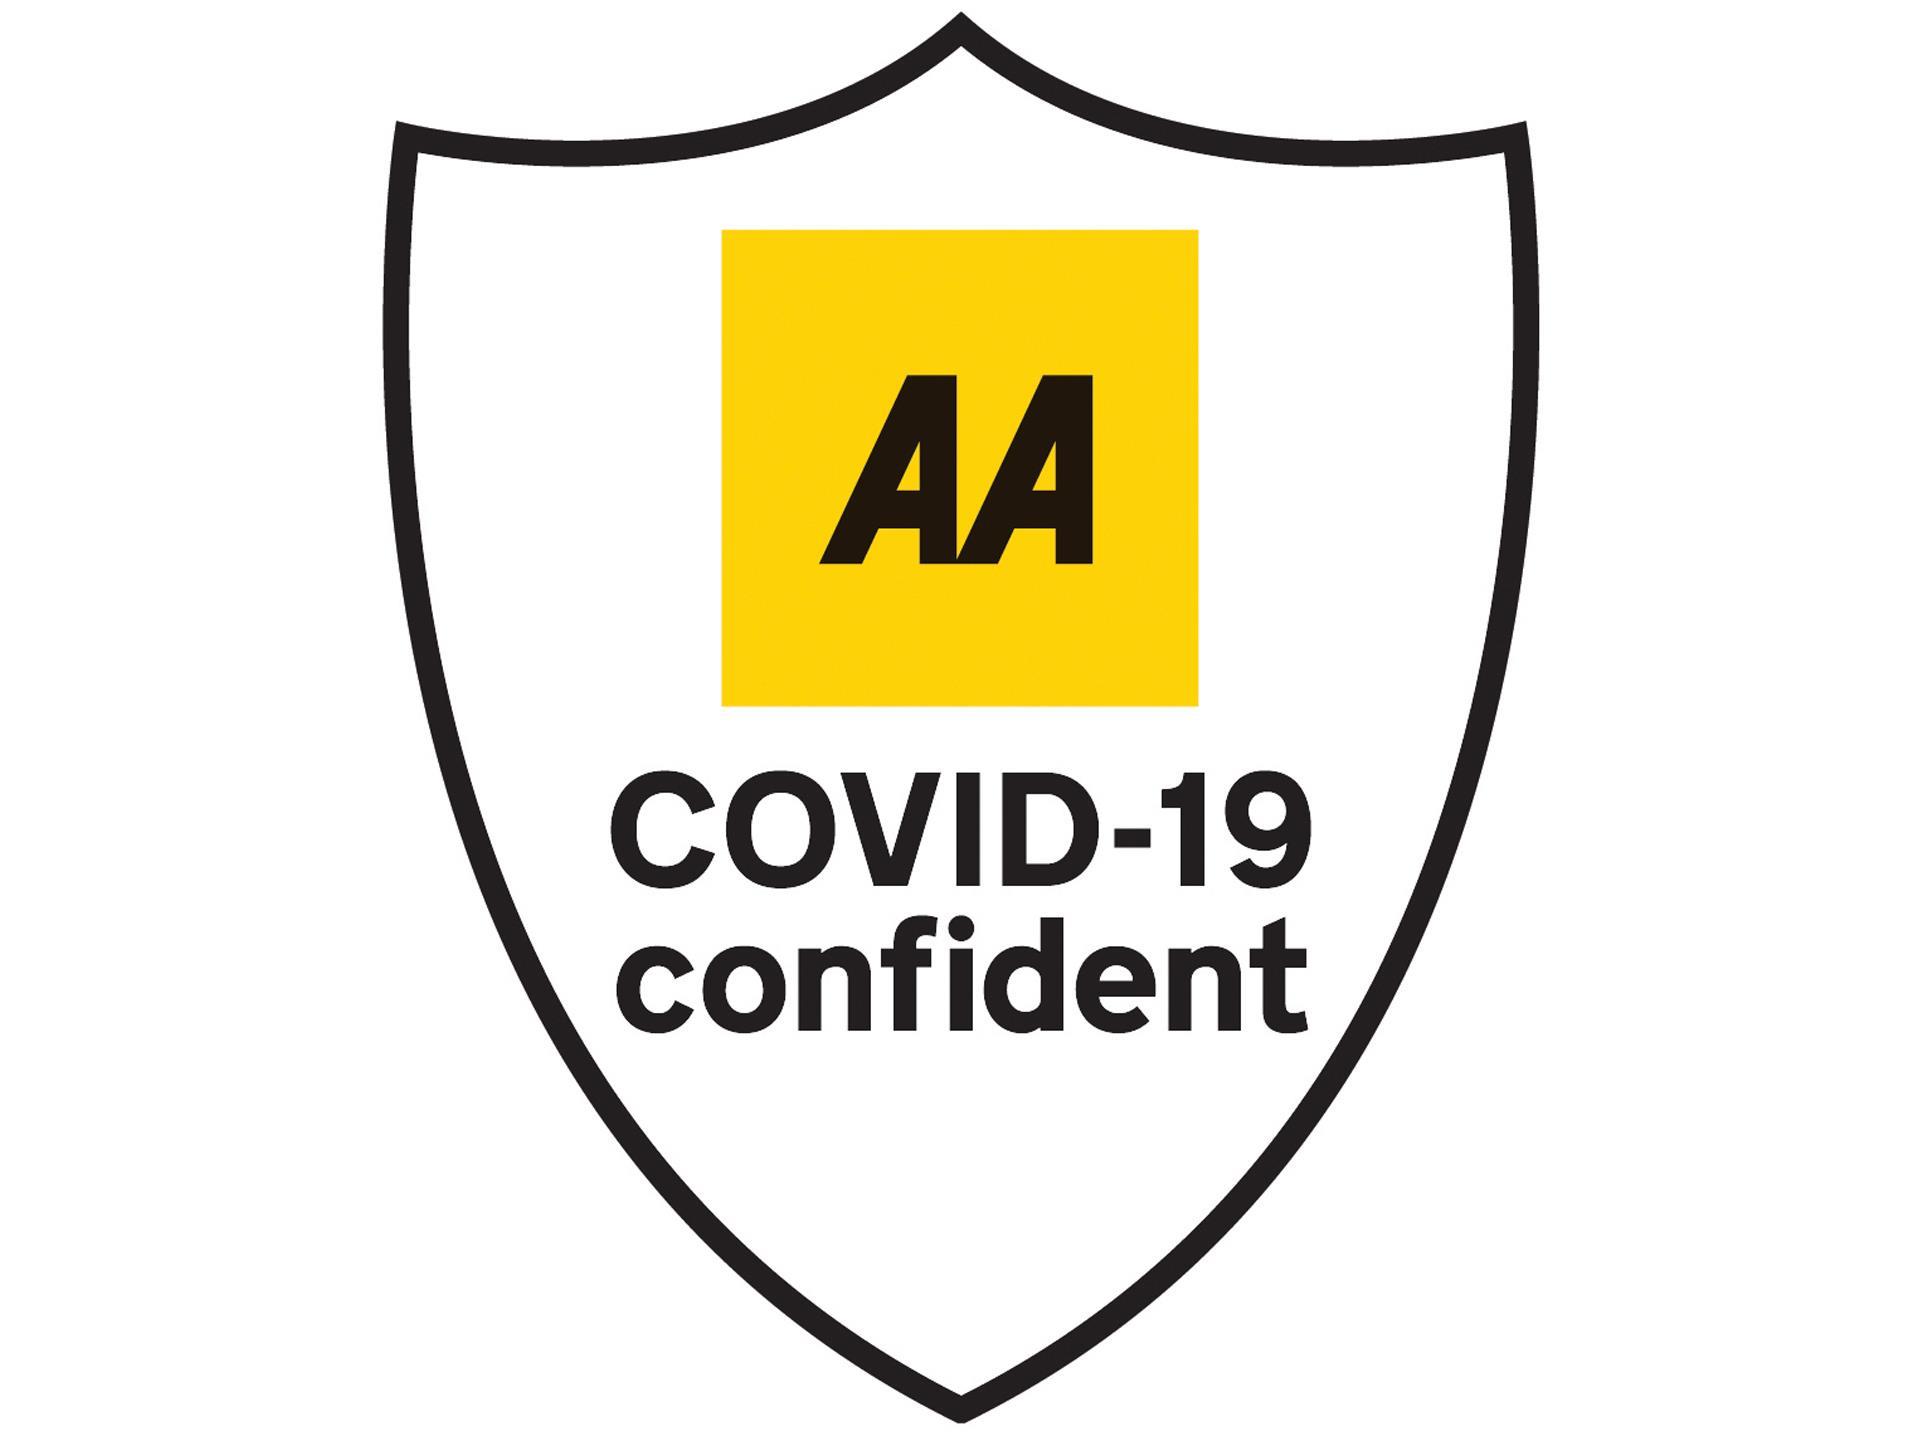 COVID-19 confident